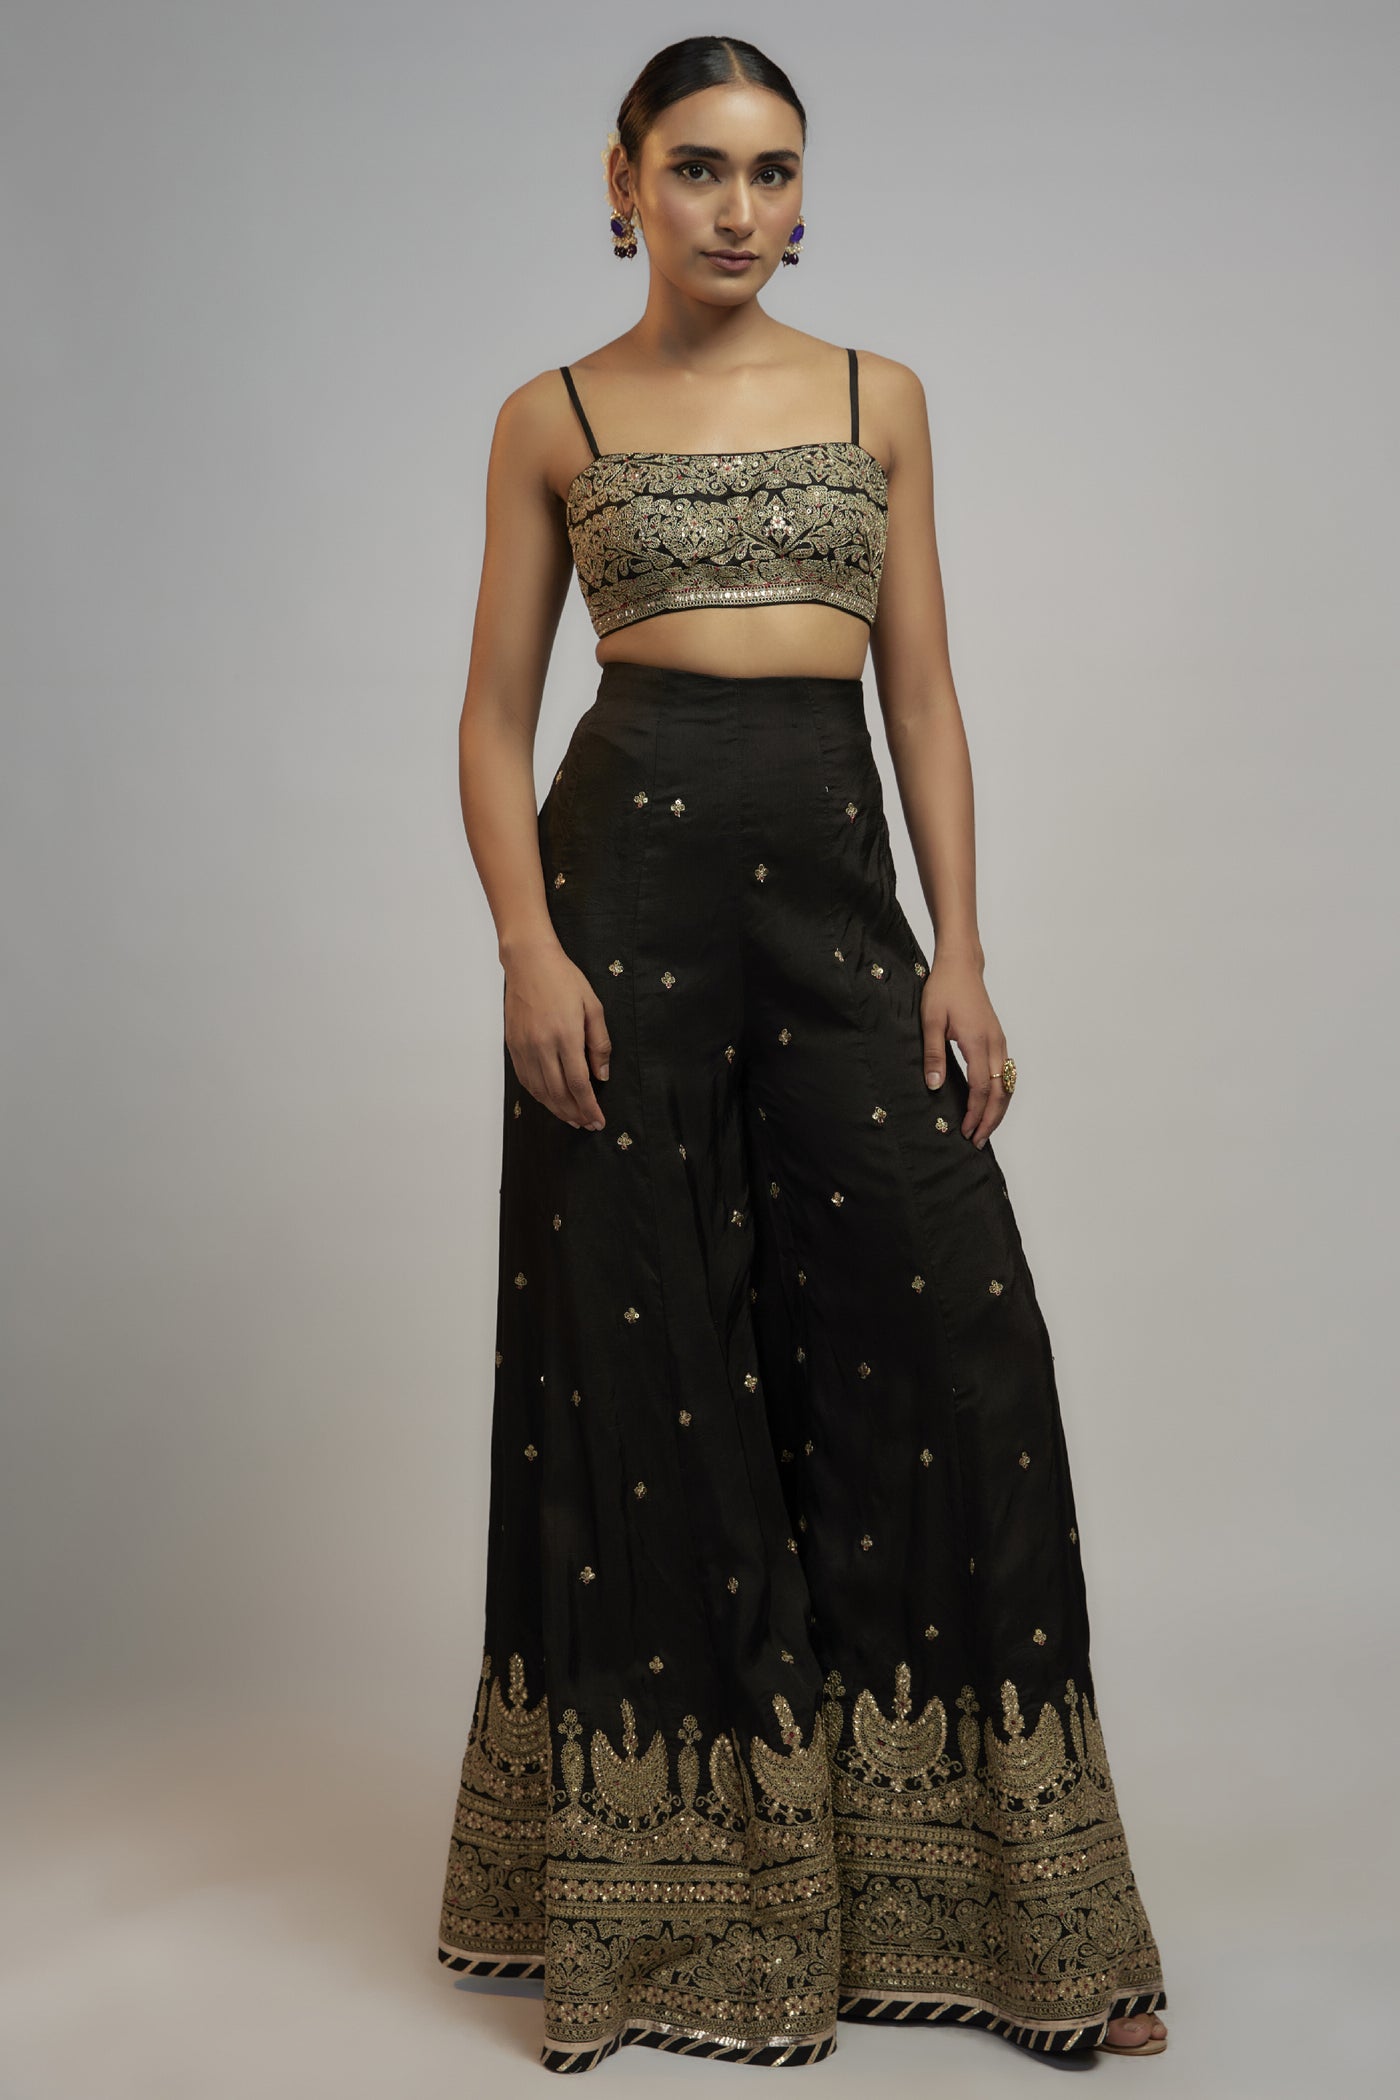 Gopi Vaid Golconda Afreen Sharara Set Indian designer wear online shopping melange singapore